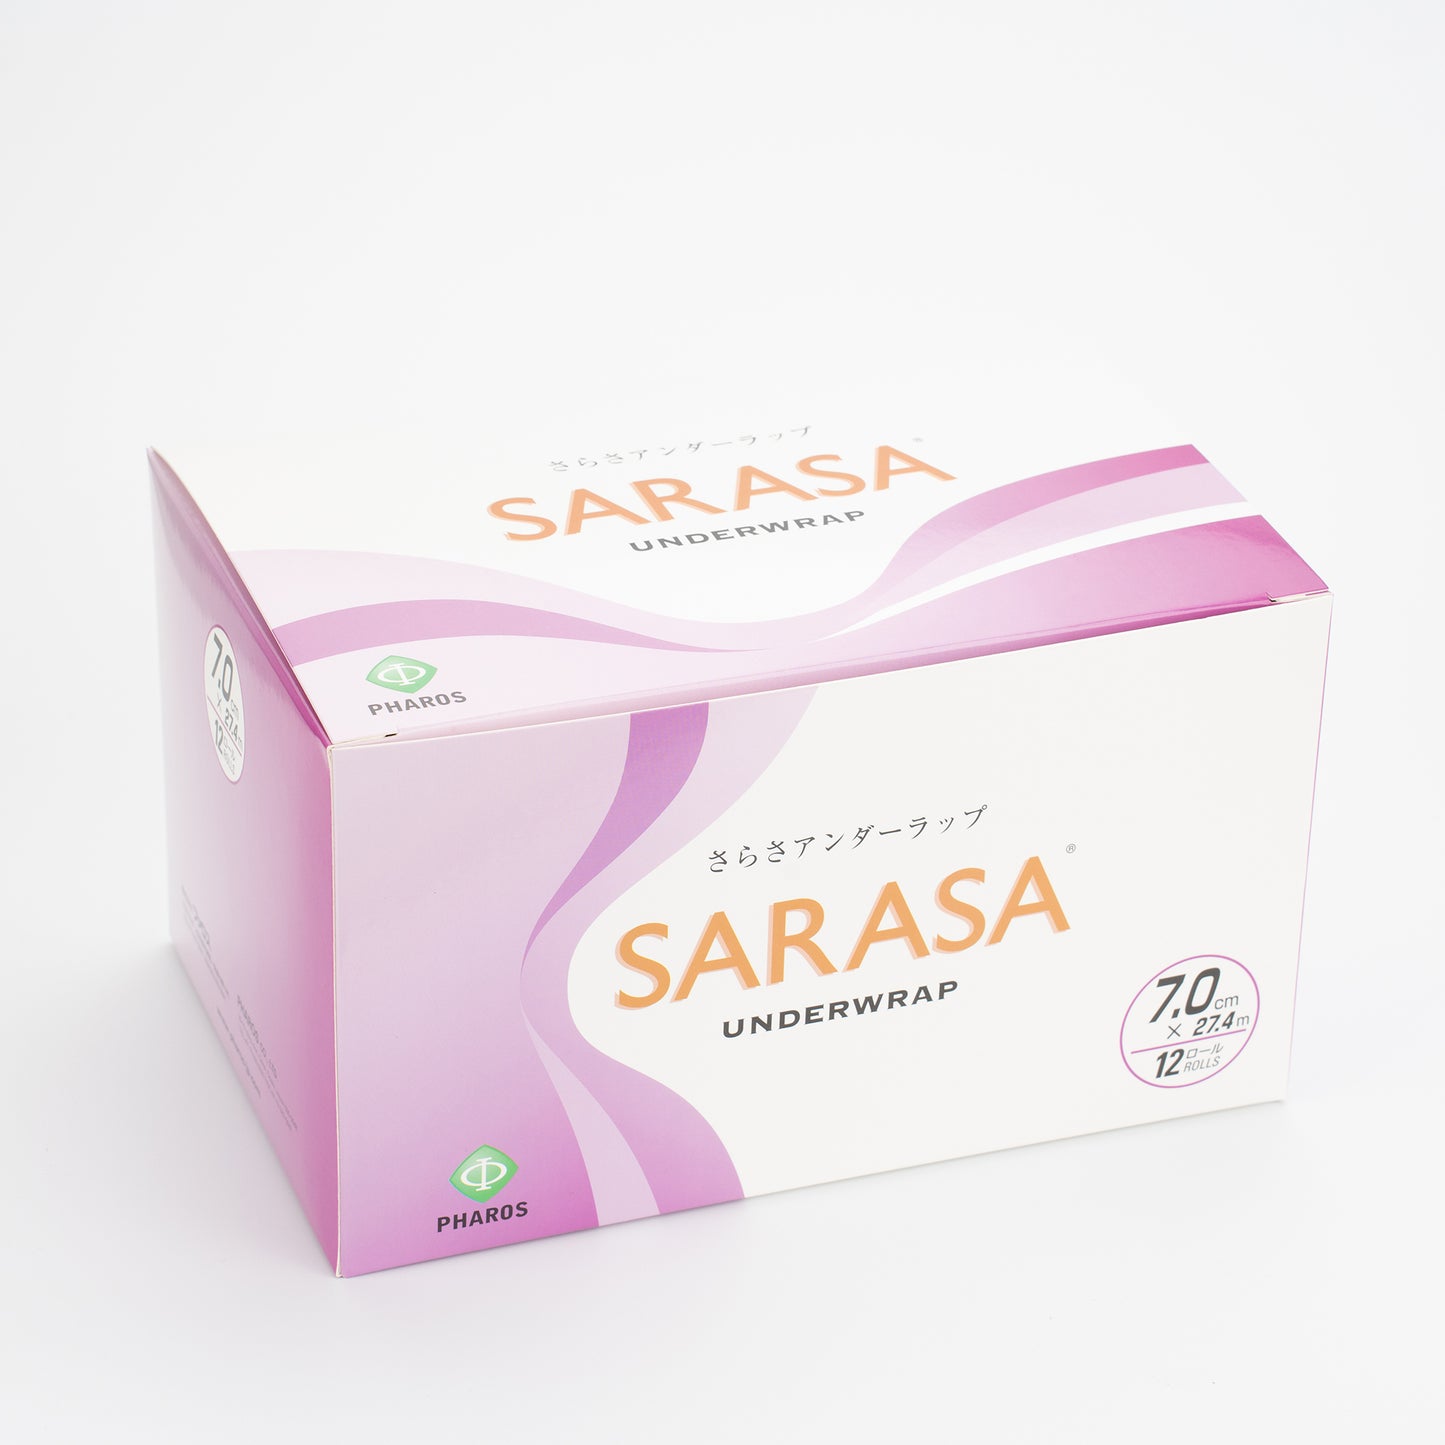 【お得なまとめ買い】SARASA アンダーラップ(7cm 12巻入) 8箱セット